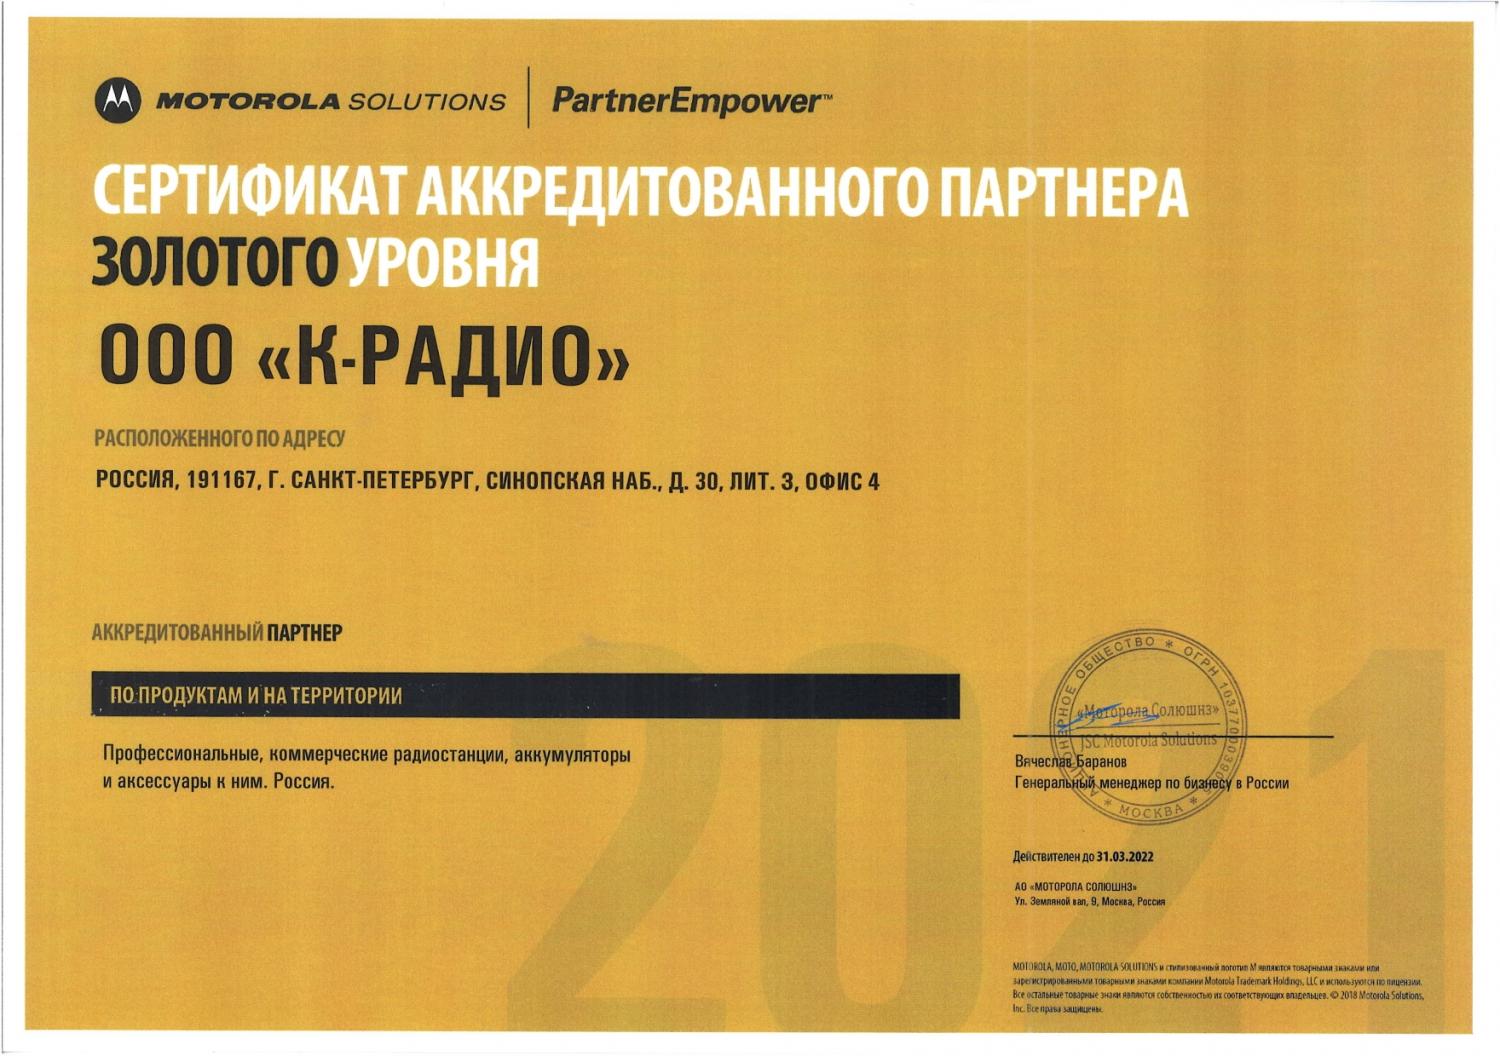 Сертификат ООО "К-Радио" в качестве аккредитованного партнера Моторола Солюшенз